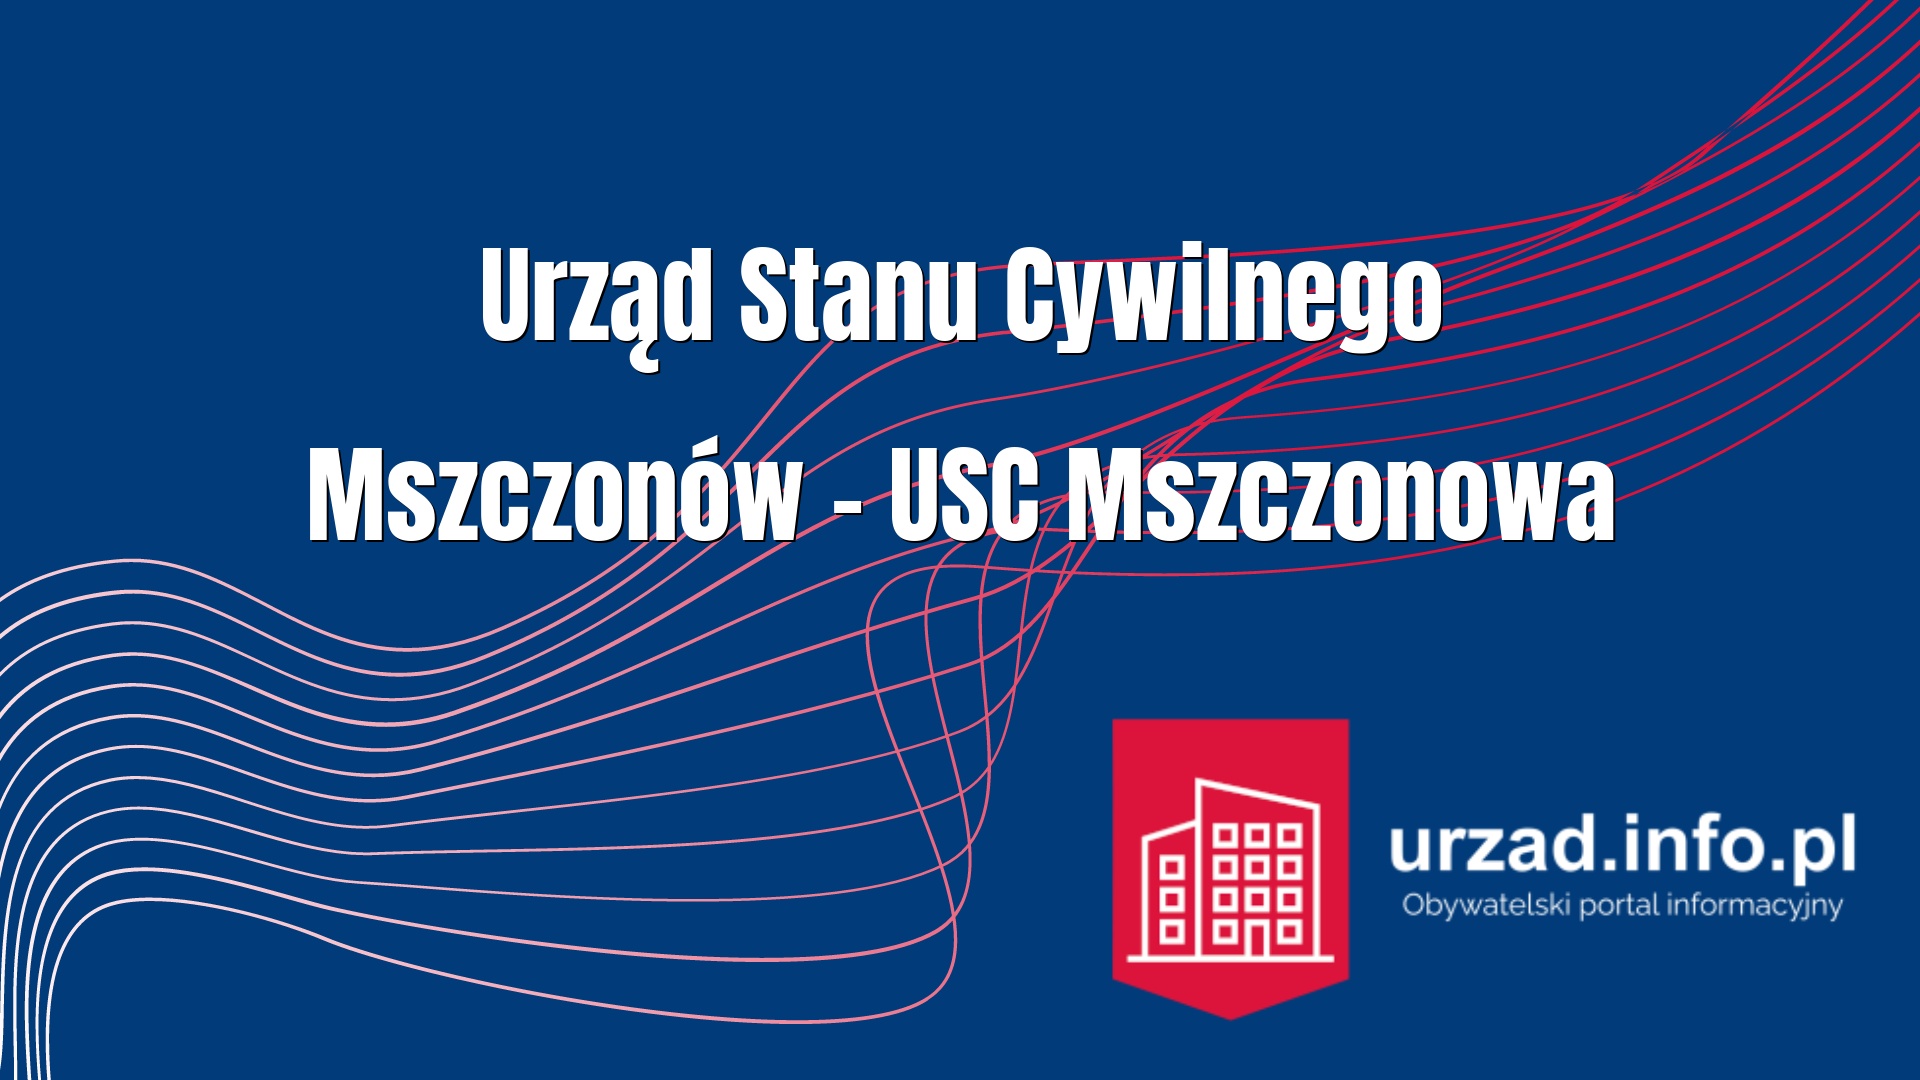 Urząd Stanu Cywilnego Mszczonów – USC Mszczonowa